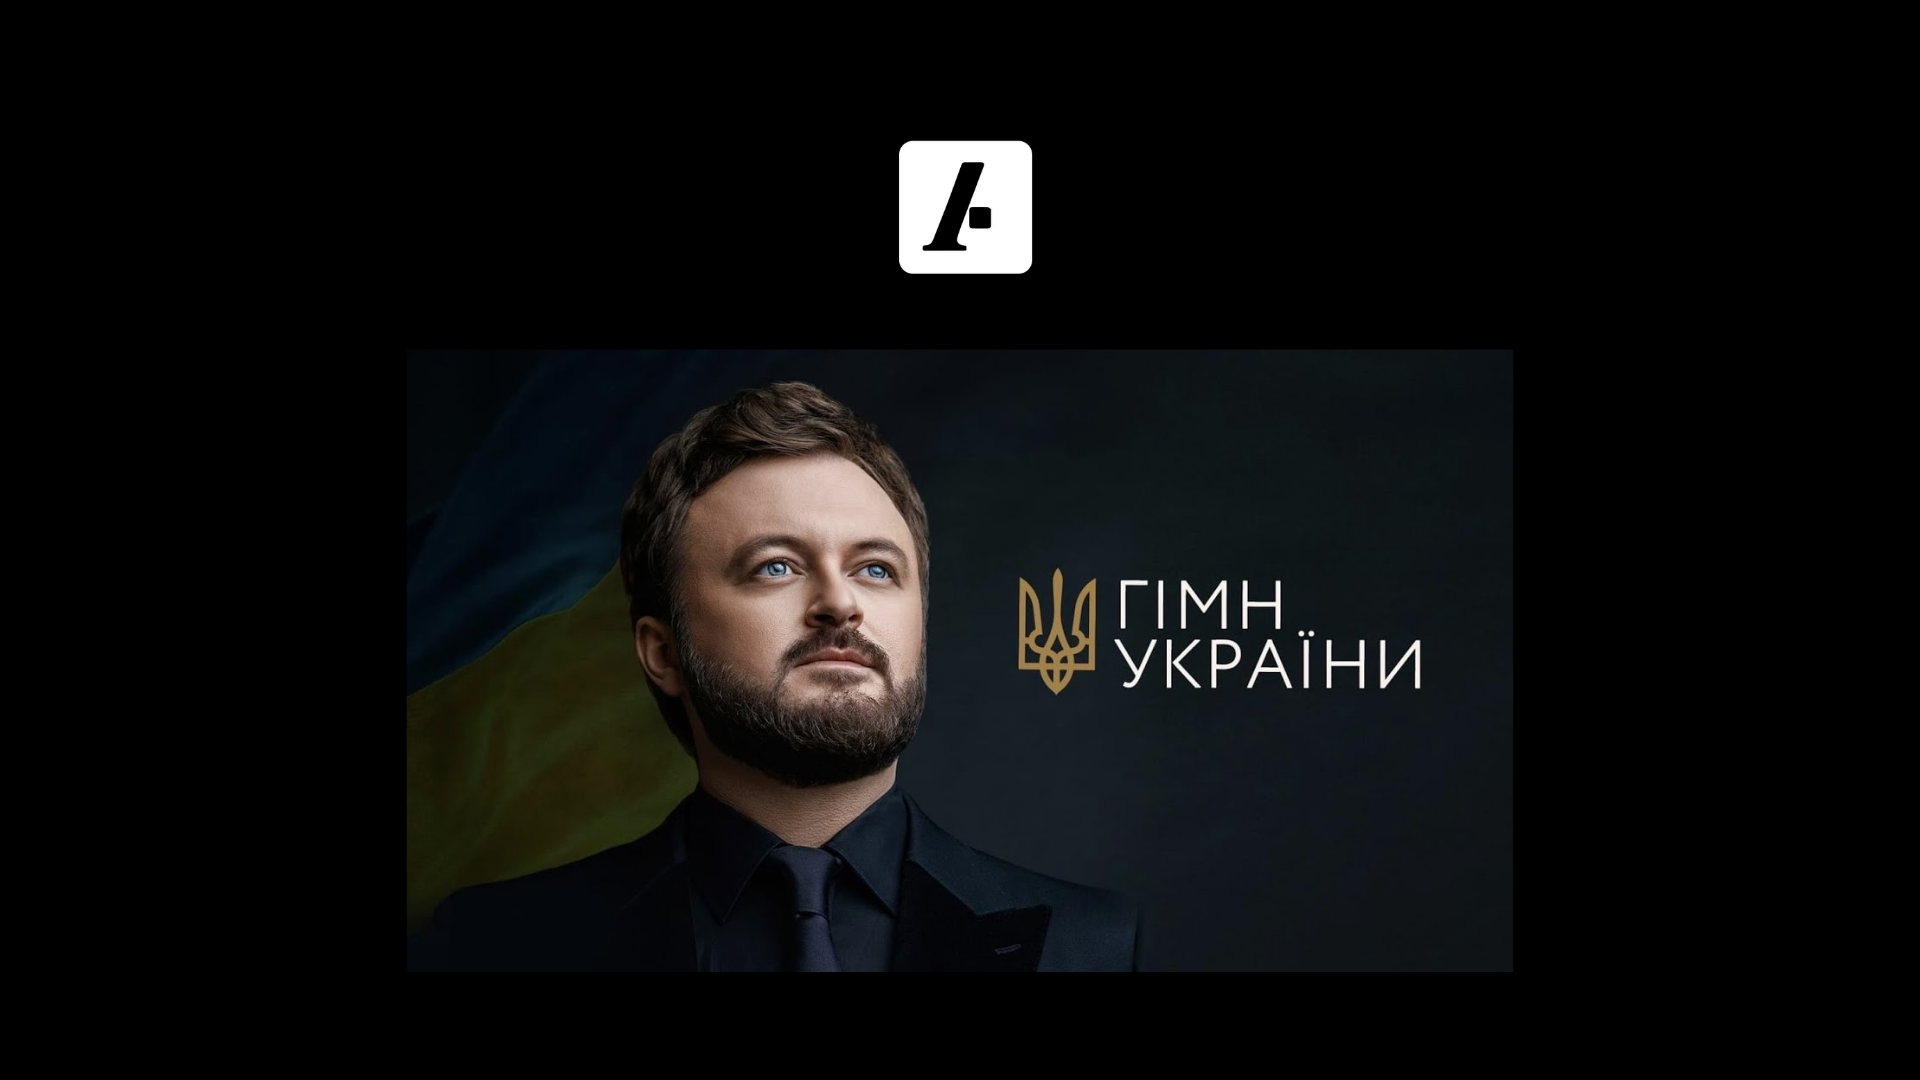 У Верховній Раді запропонували змінити текст Гімну України. Вже є нові слова